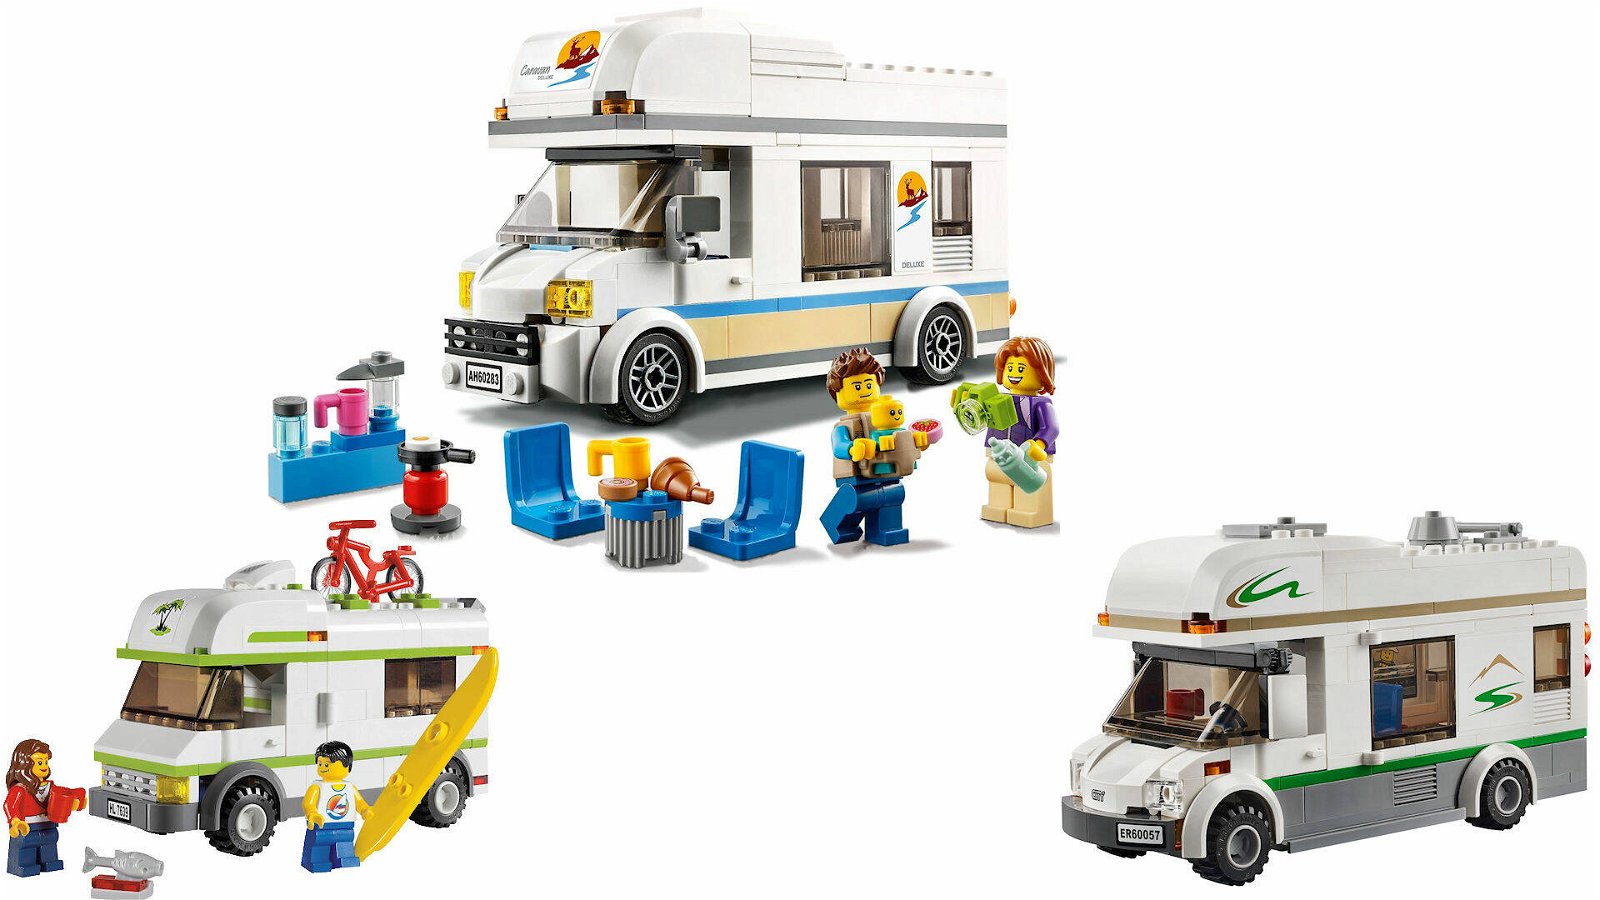 Immagine di LEGO MANIA: set LEGO City vecchi e nuovi a confronto